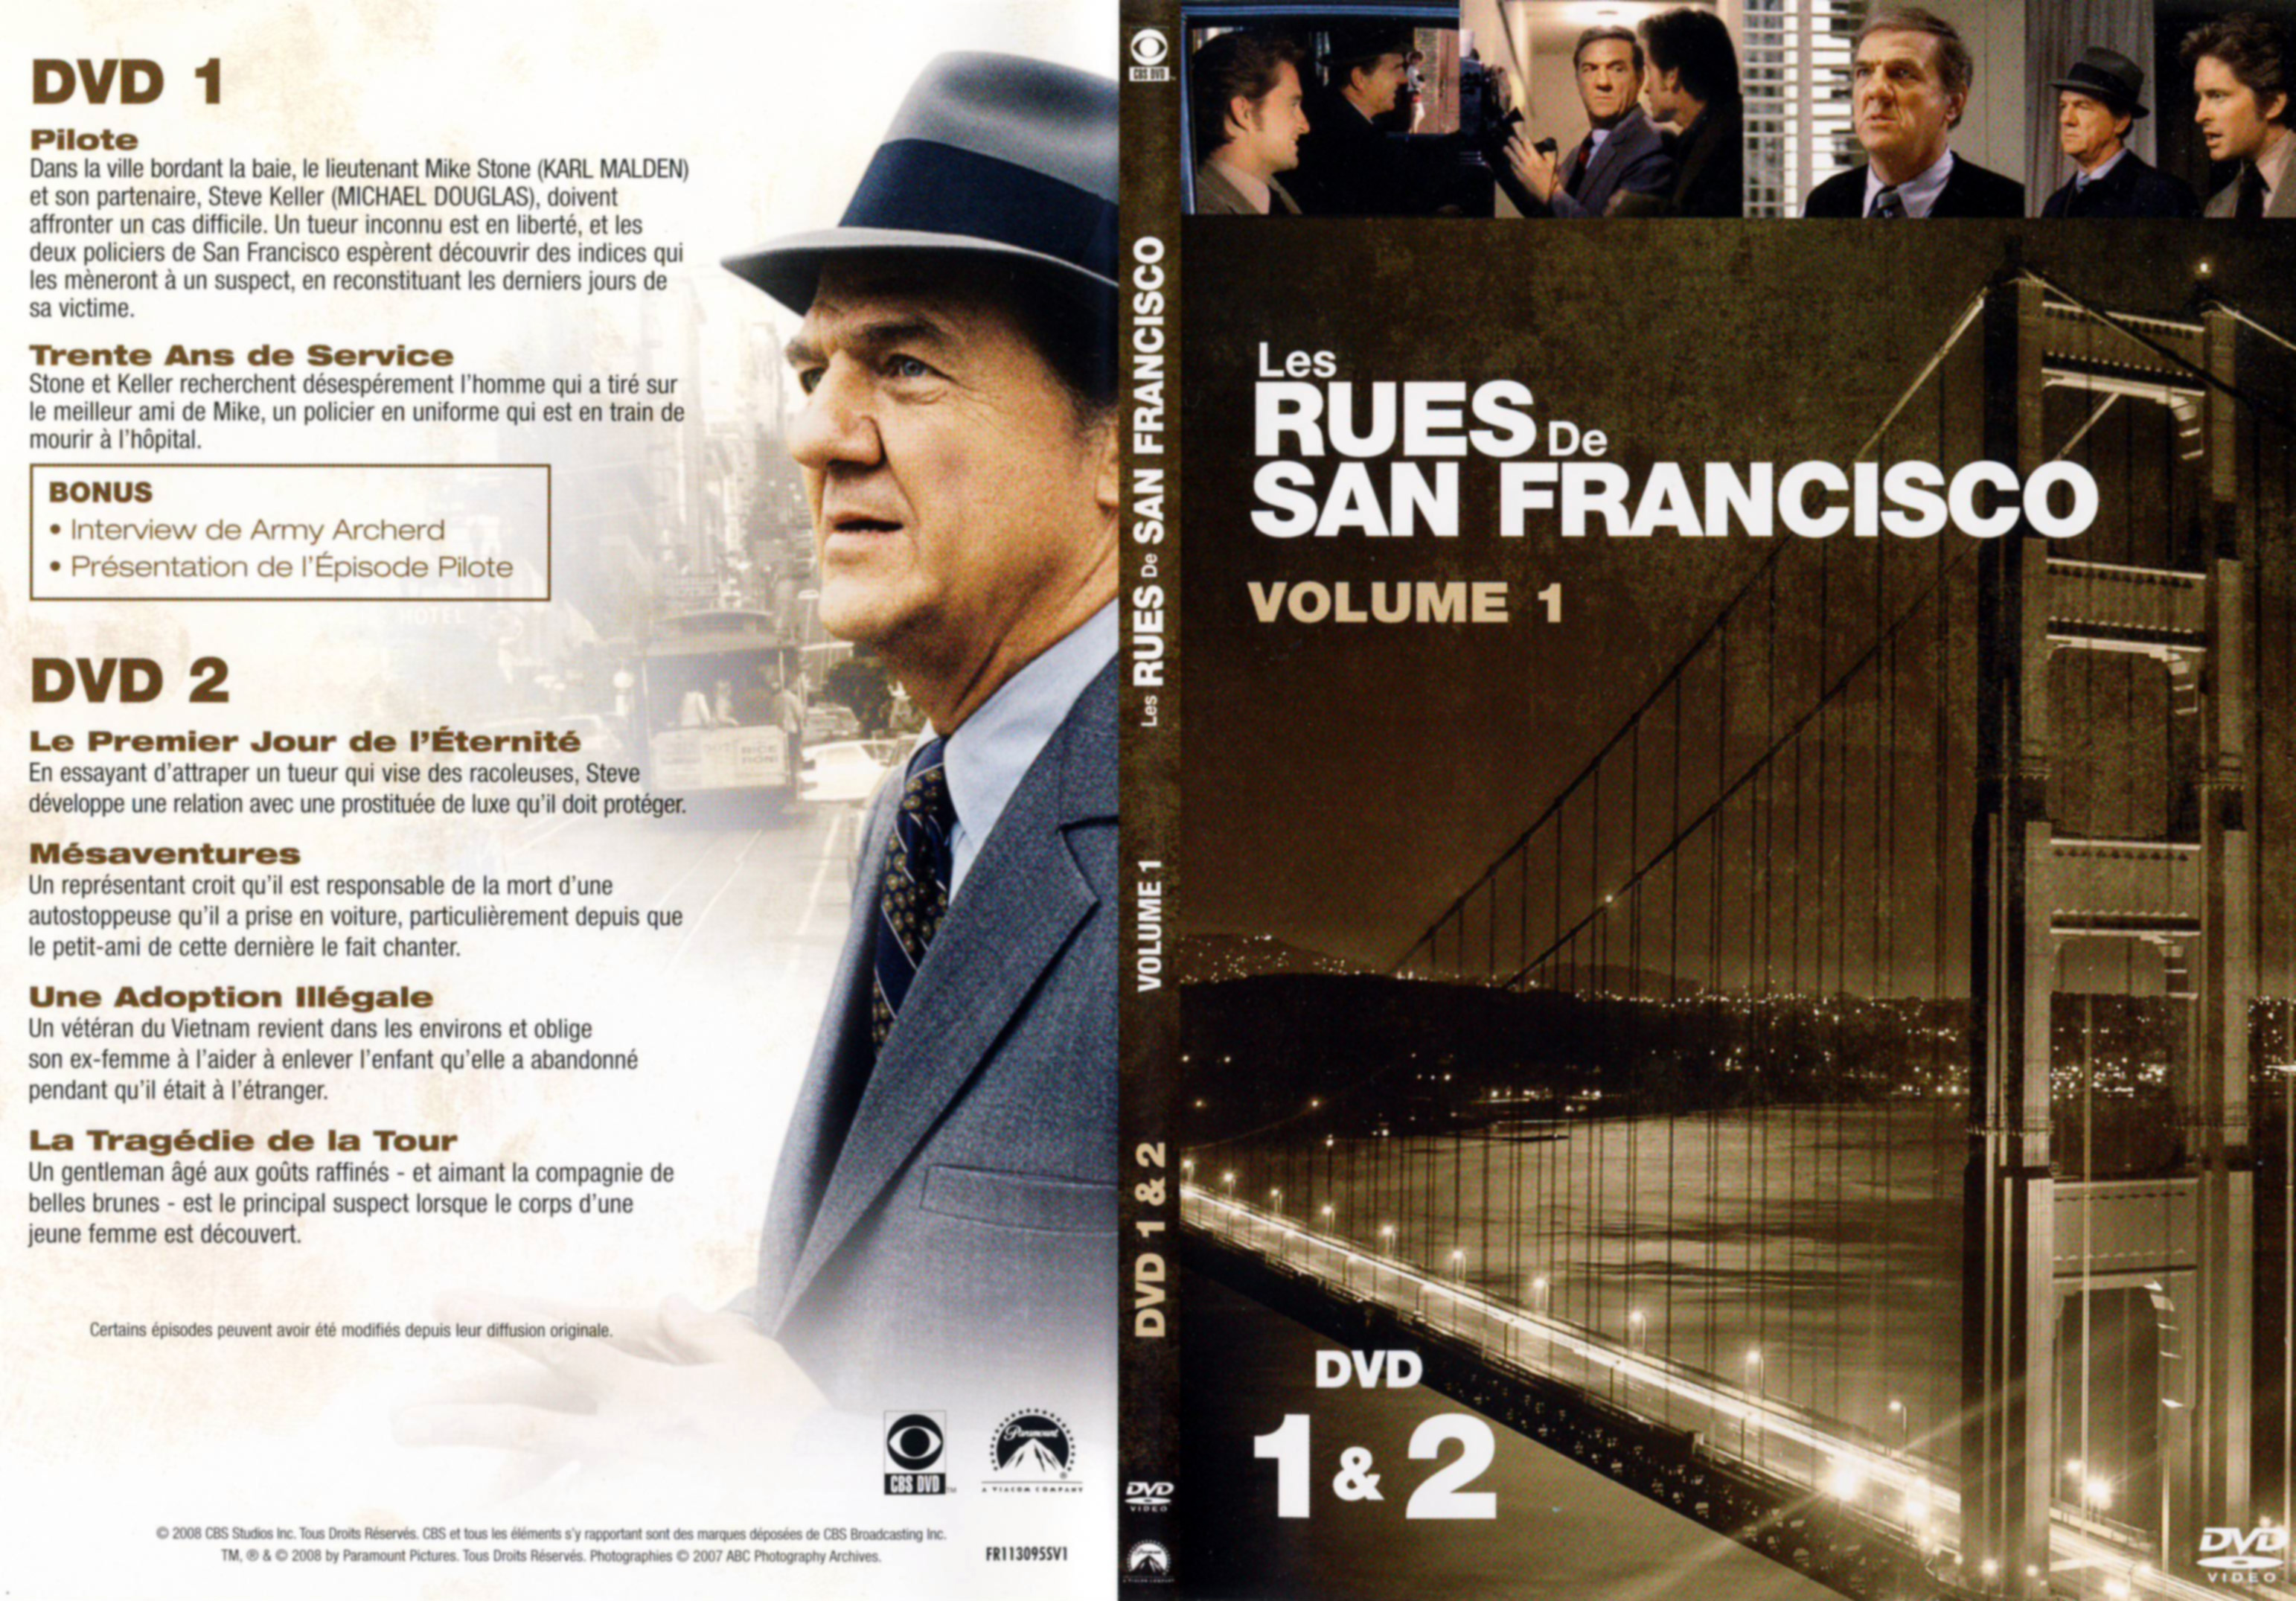 Jaquette DVD Les rues de San Francisco vol 01 DVD 1